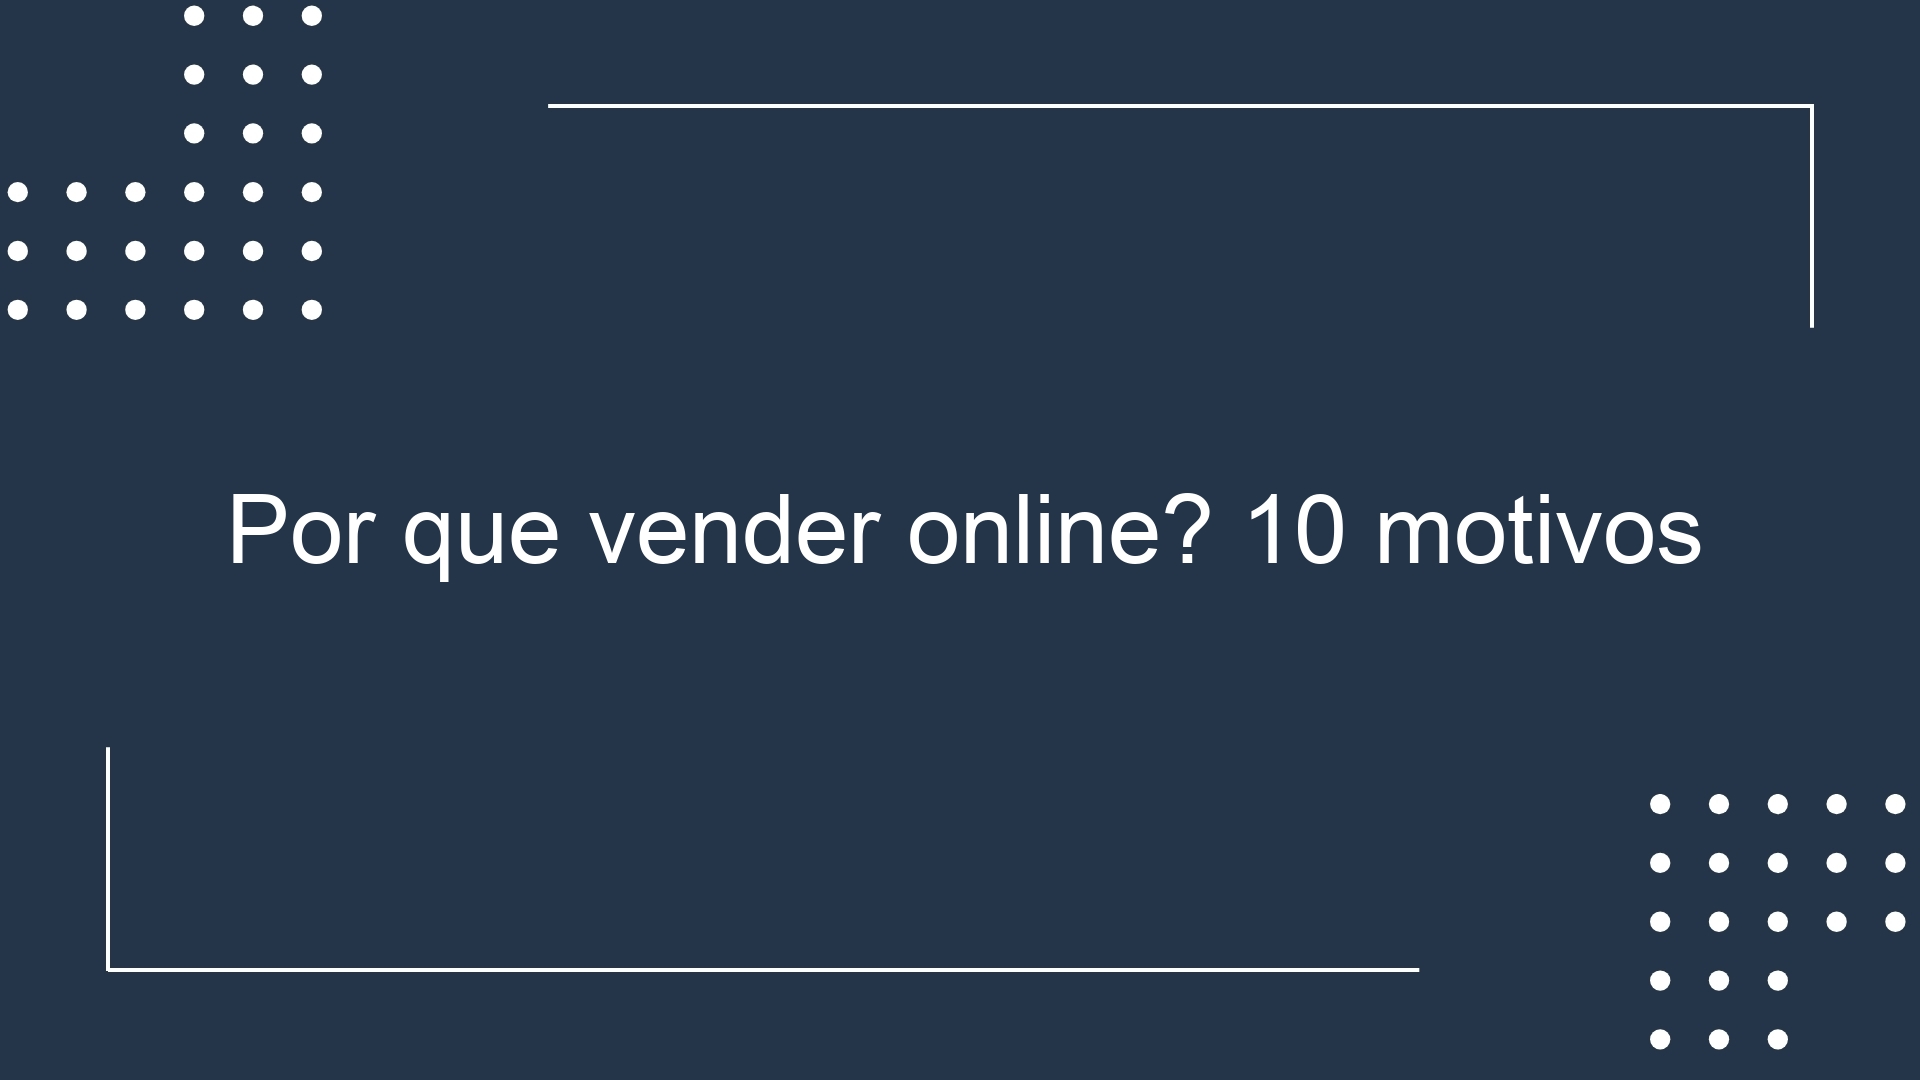 Por que vender online? 10 motivos